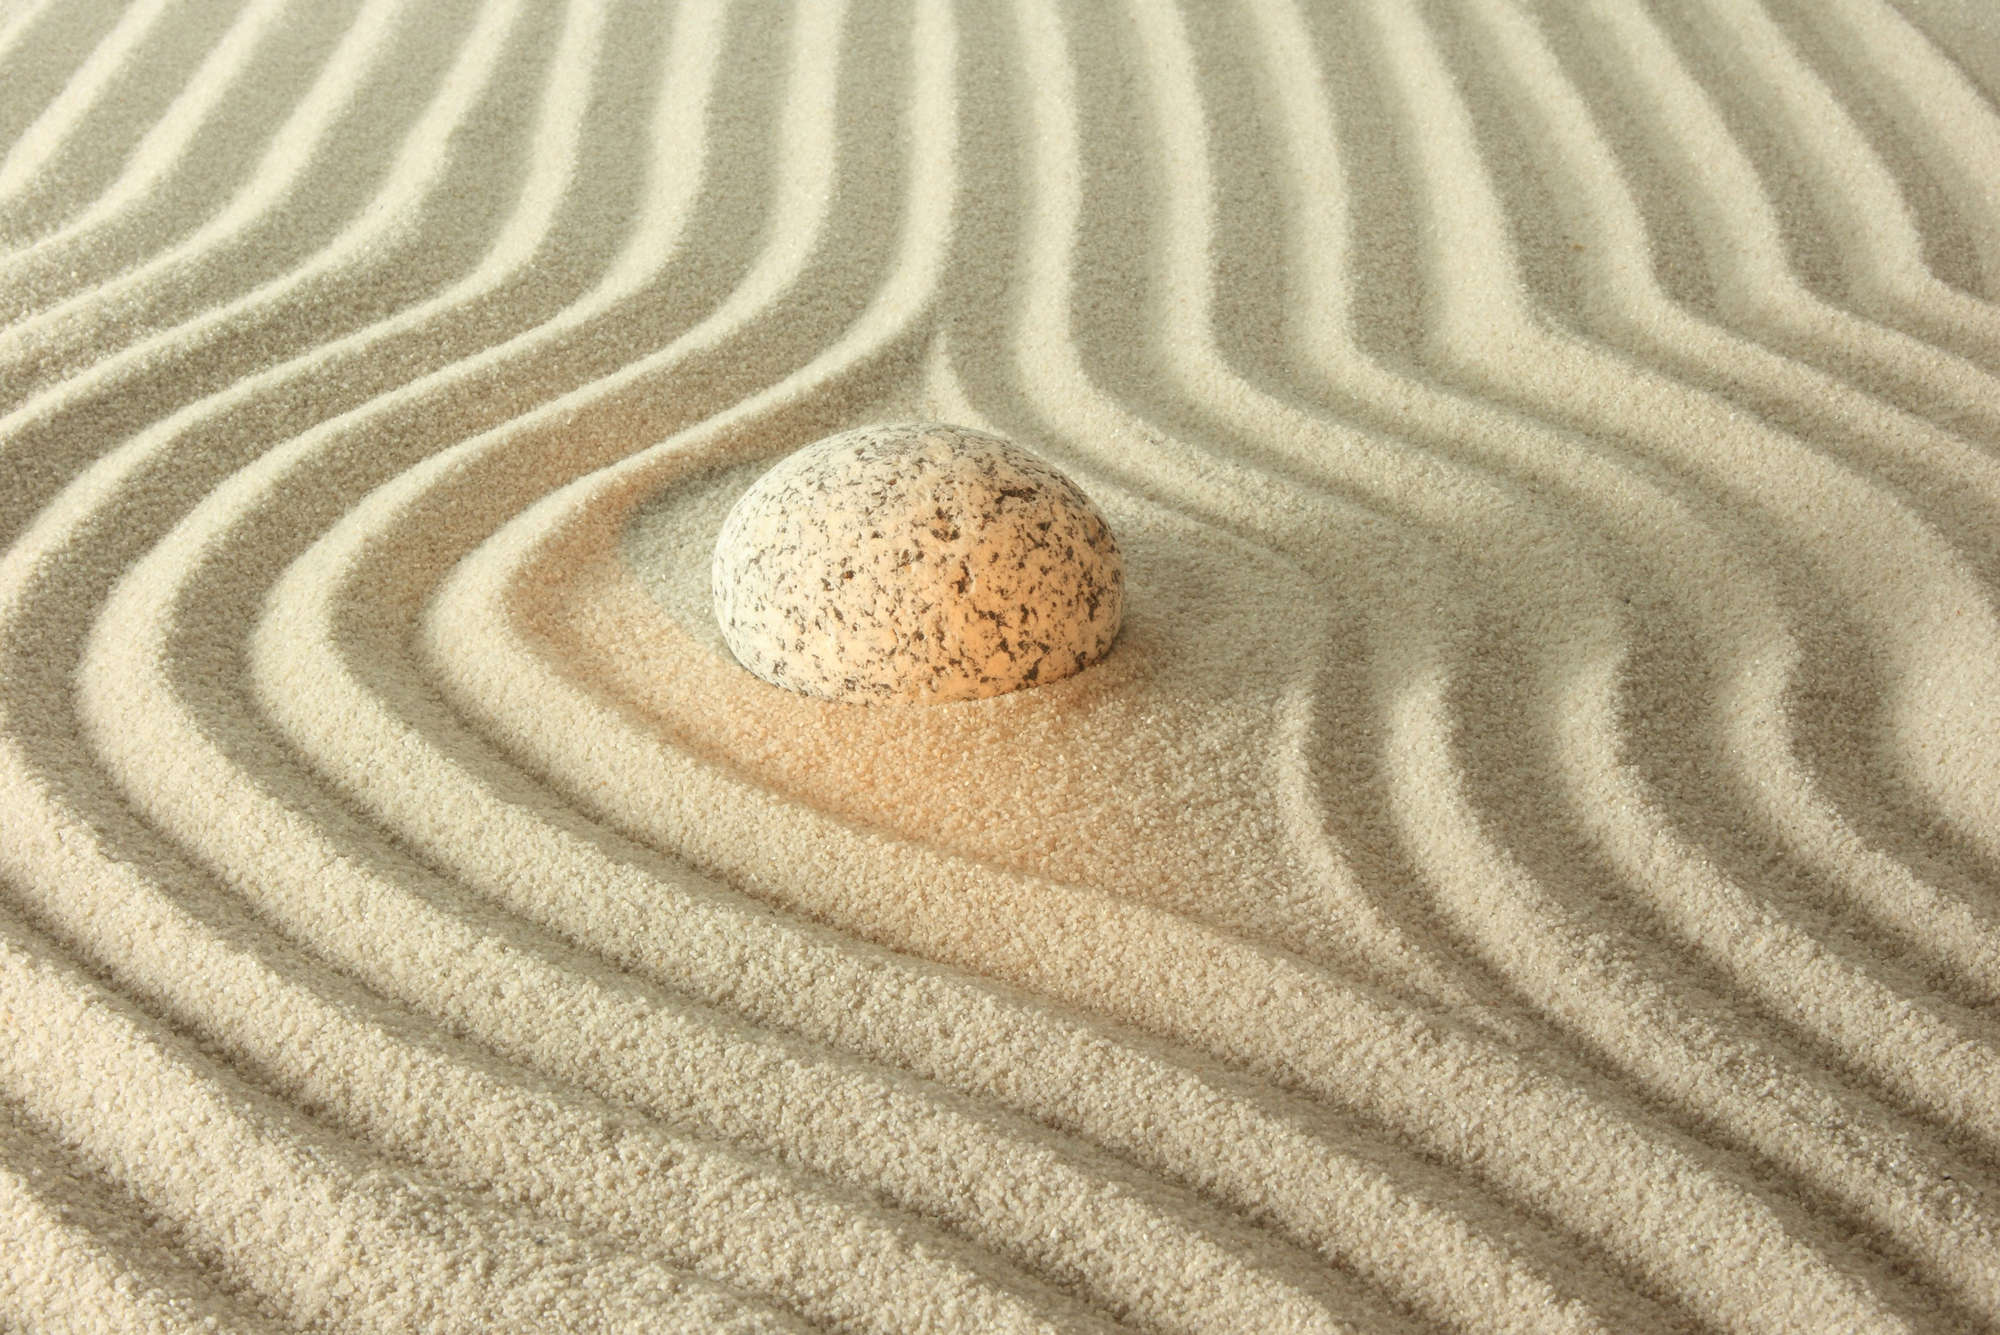             Digital behang gloeiende steen in het zand - parelmoer glad vlies
        